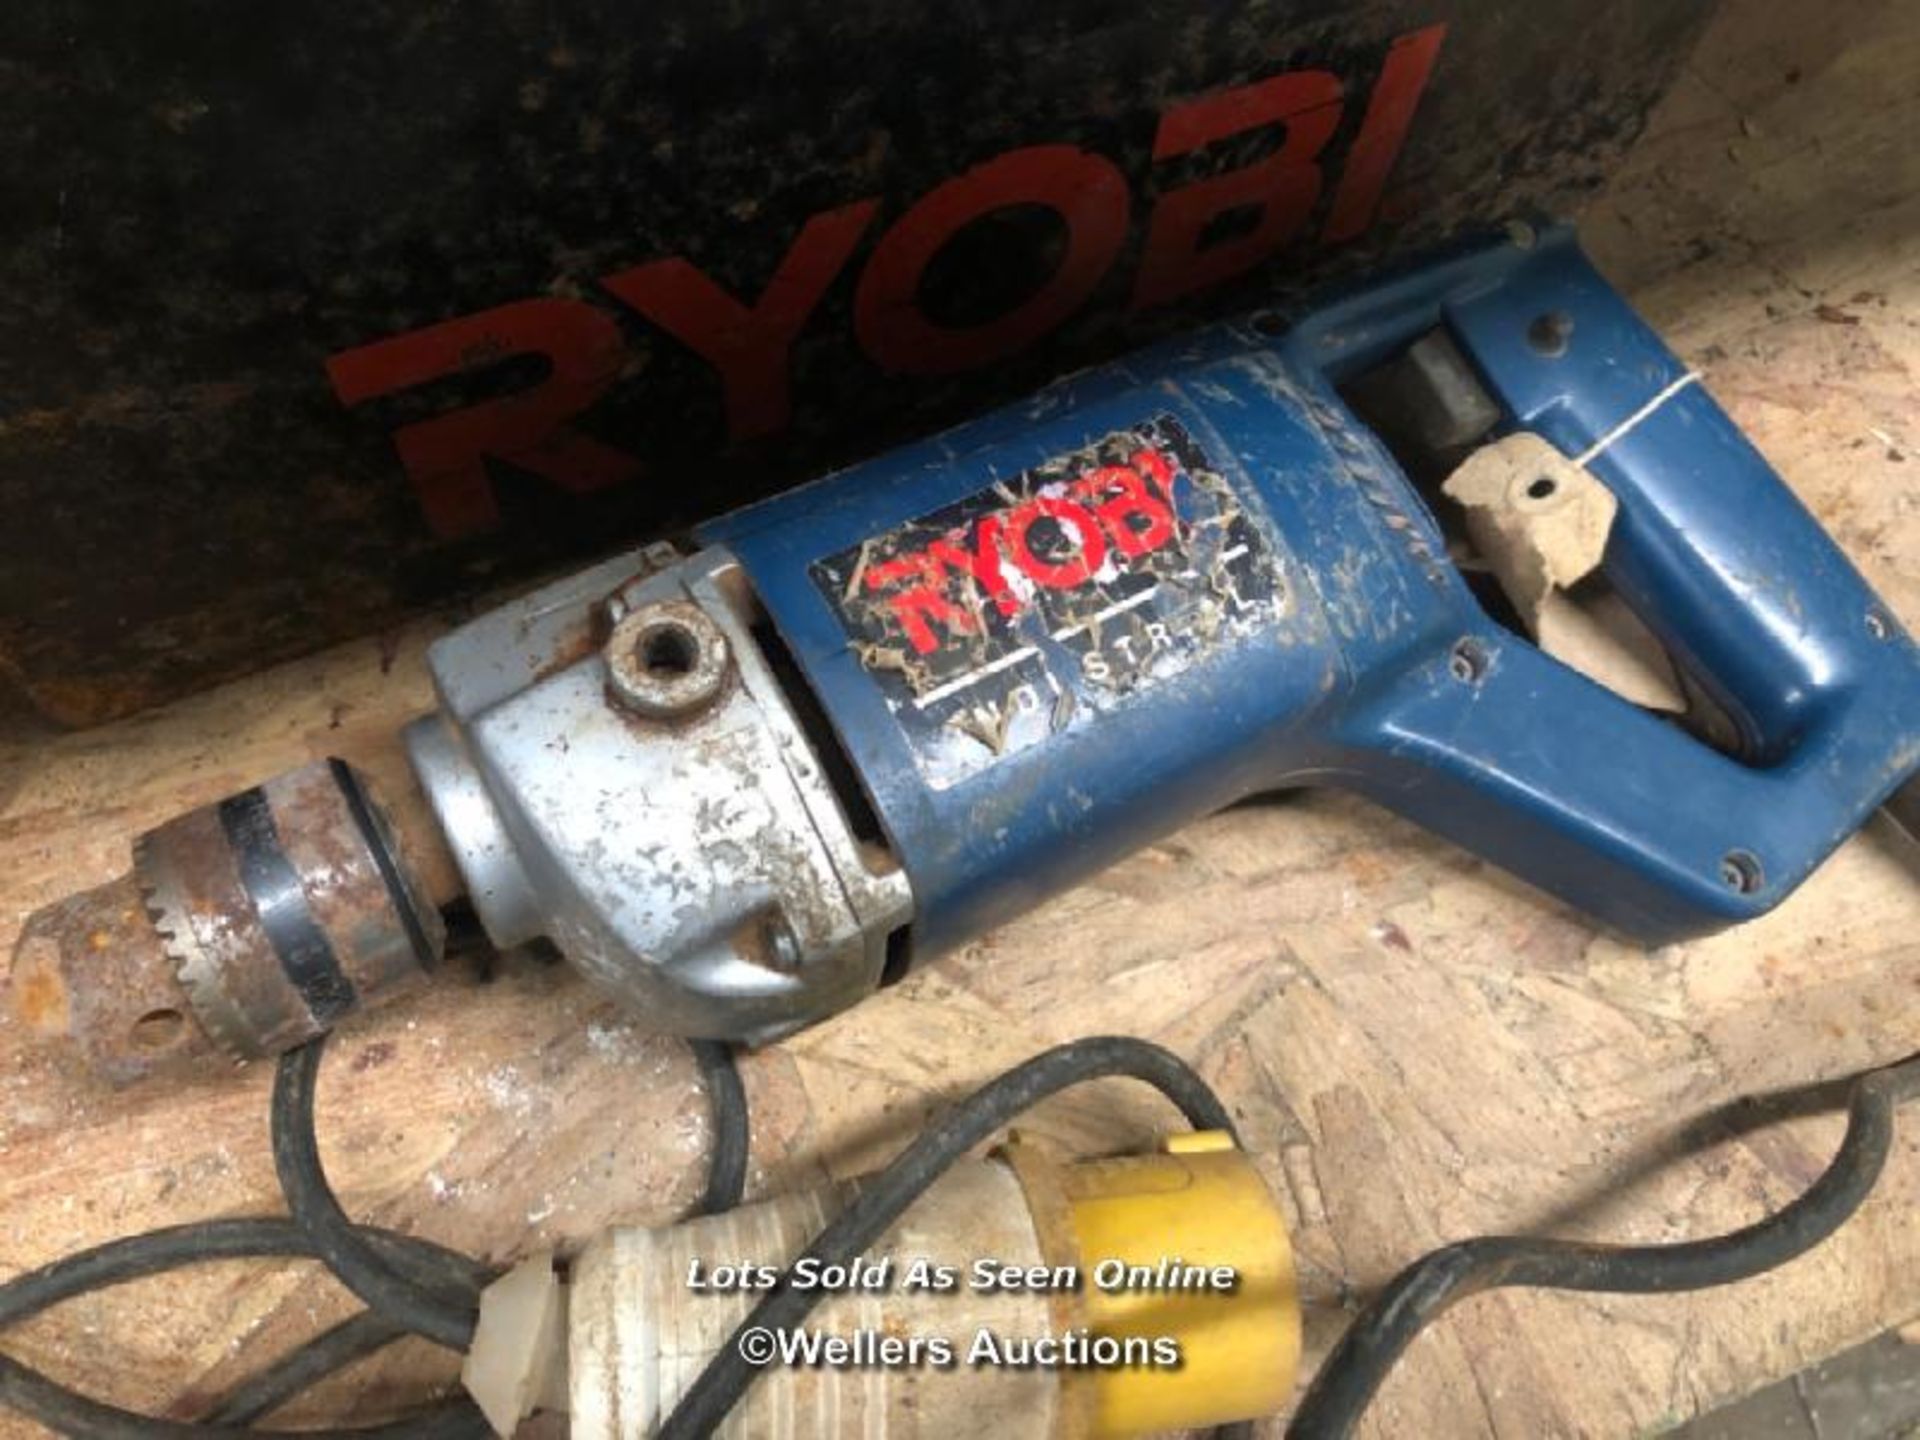 RYOBI DCD-125 110V DRILL, IN CASE - Image 2 of 2